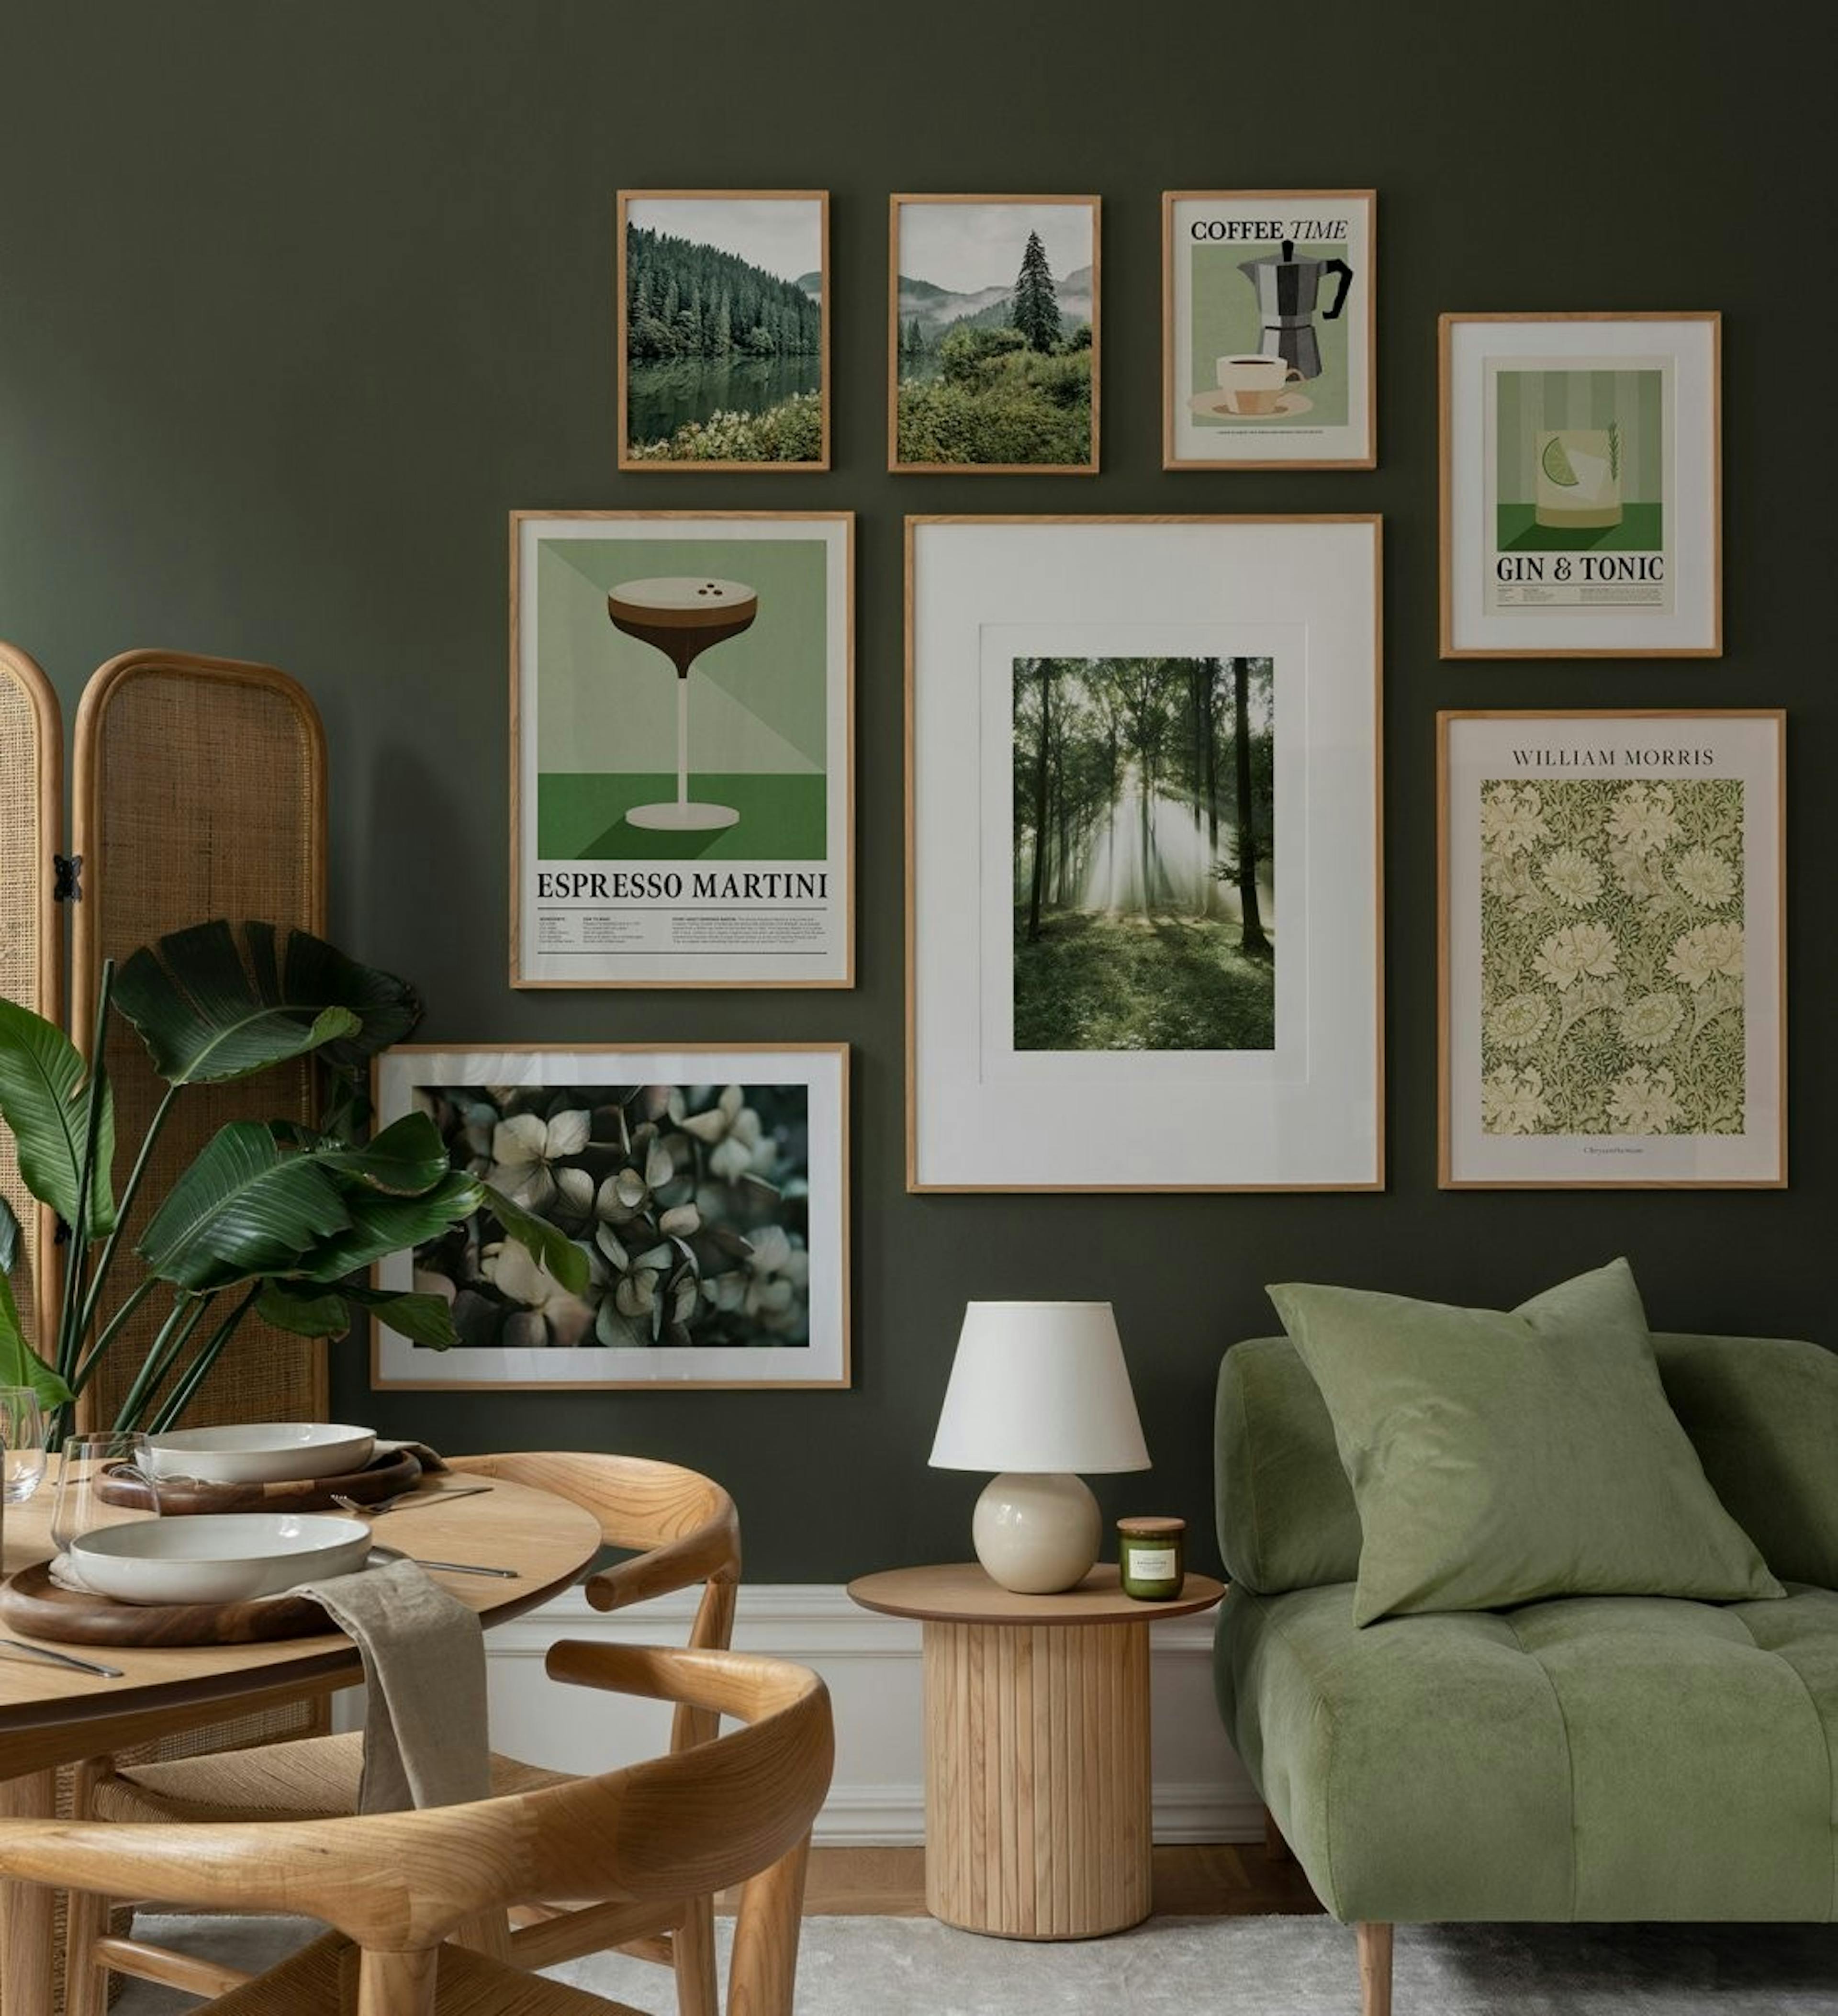 녹색과 베이지 톤의 갤리 벽, 자연, 꽃, 복고풍 프린트의 현대적인 조합과 거실용 오크 프레임